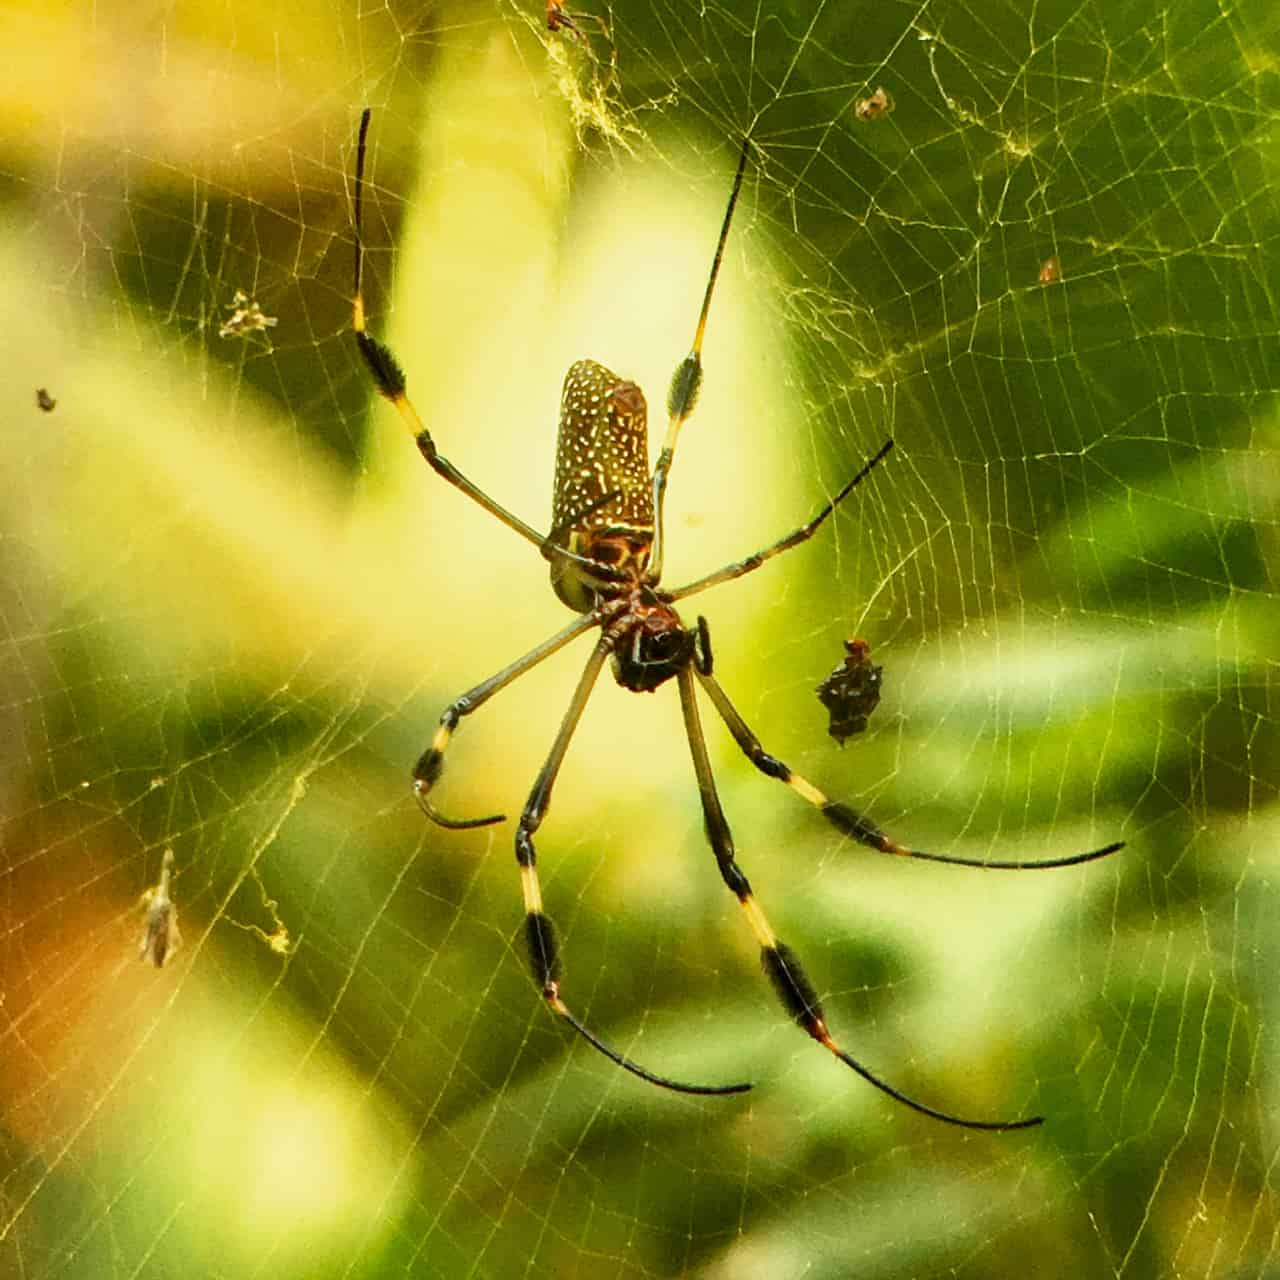 zlatý orb pavouk čeká na oběd v Národním parku Manuel Antonio